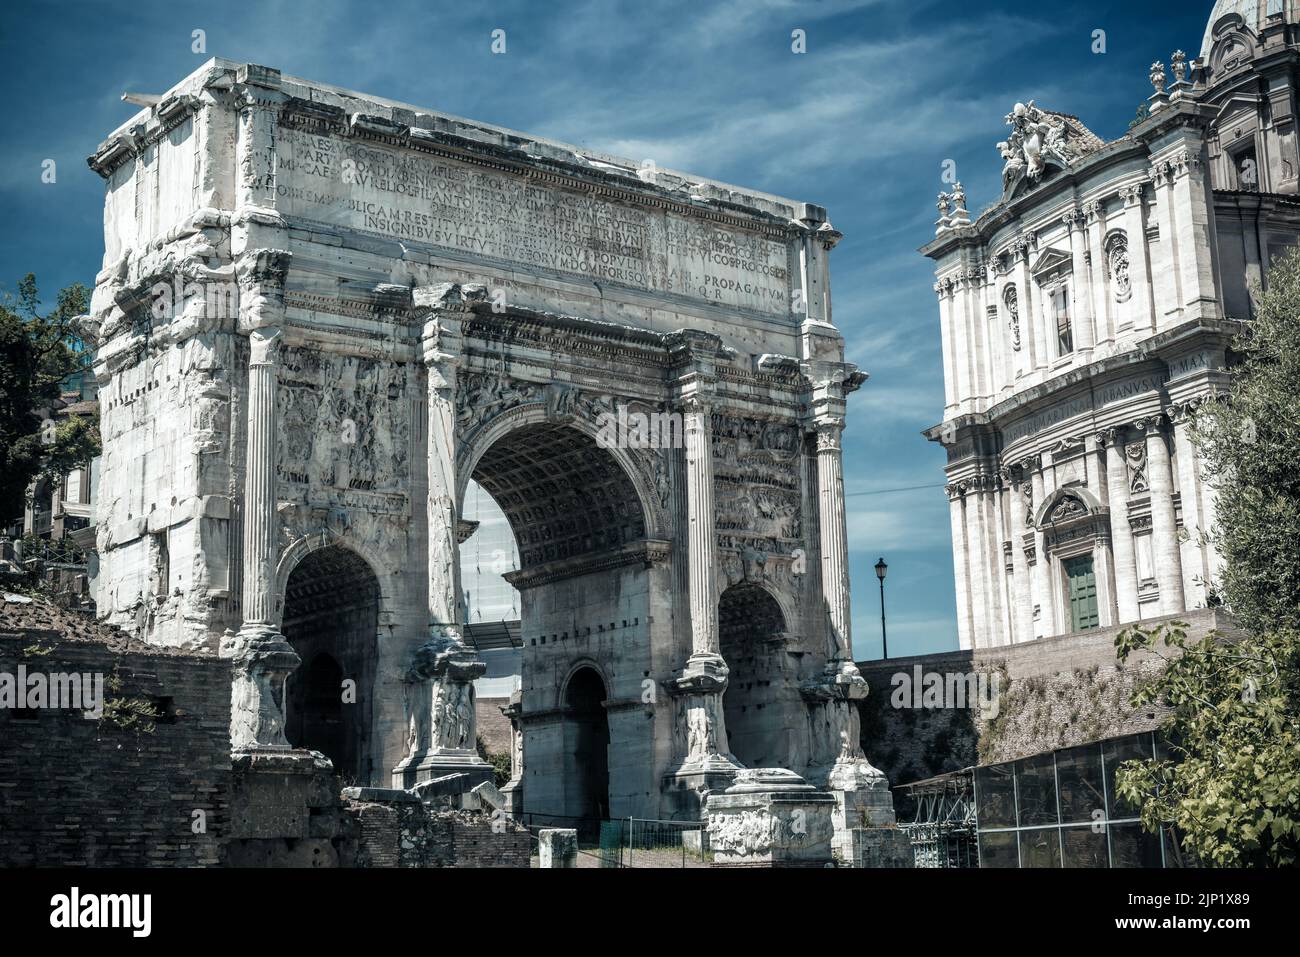 Forum romain à Rome, Italie. Vue sur l'Arche de Septimius Severus, monument ancien et monument historique de Rome. Paysage de vieux bâtiments dans la ville de Roma c Banque D'Images